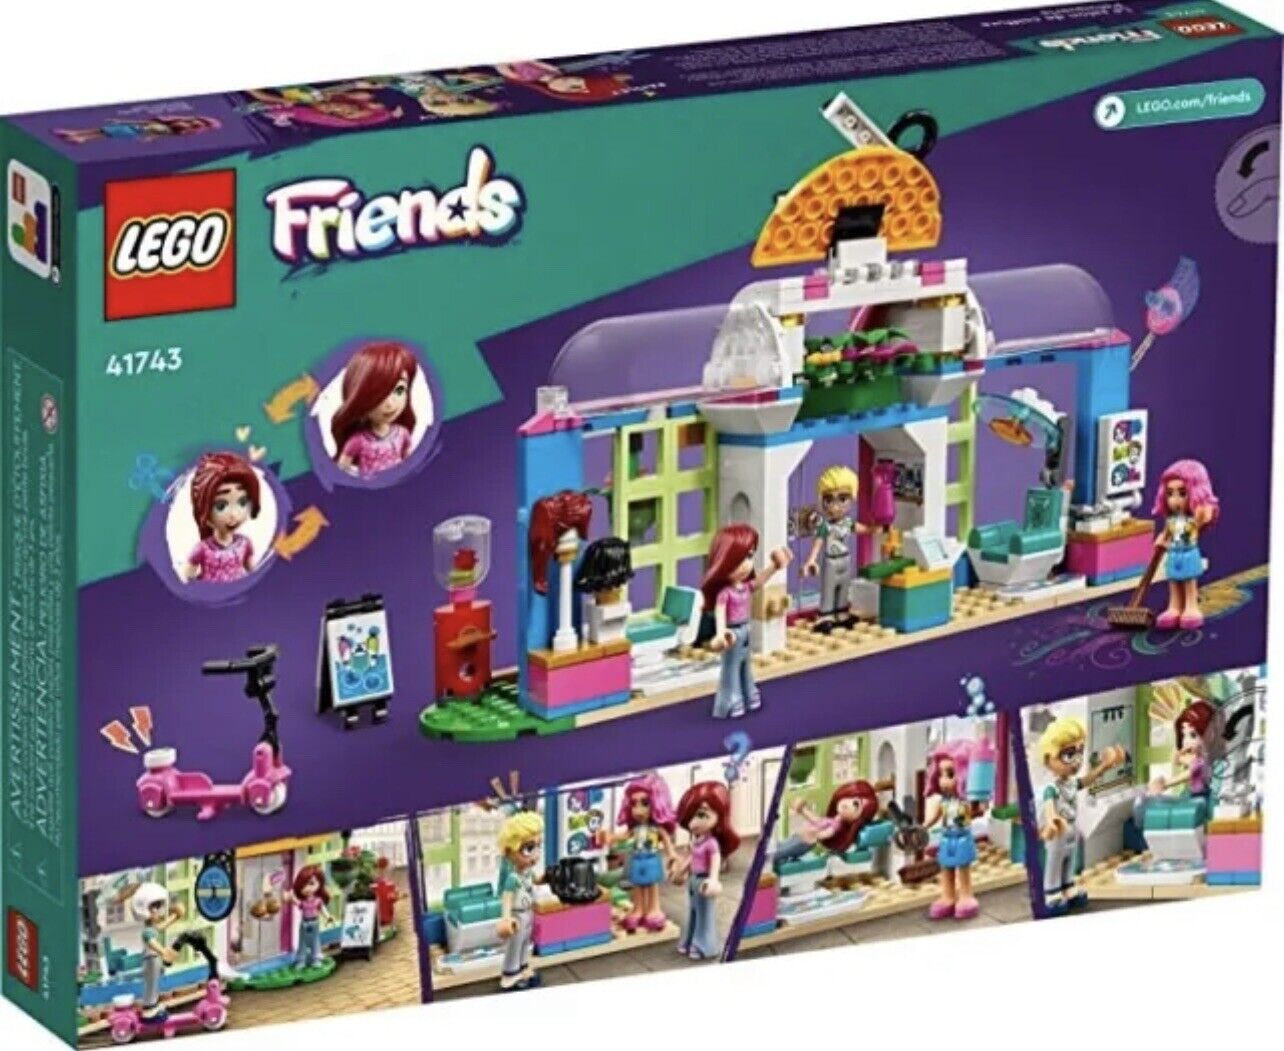 LEGO FRIENDS: Hair Salon Set 41743 - 401pcs (box recommends ages 6+).